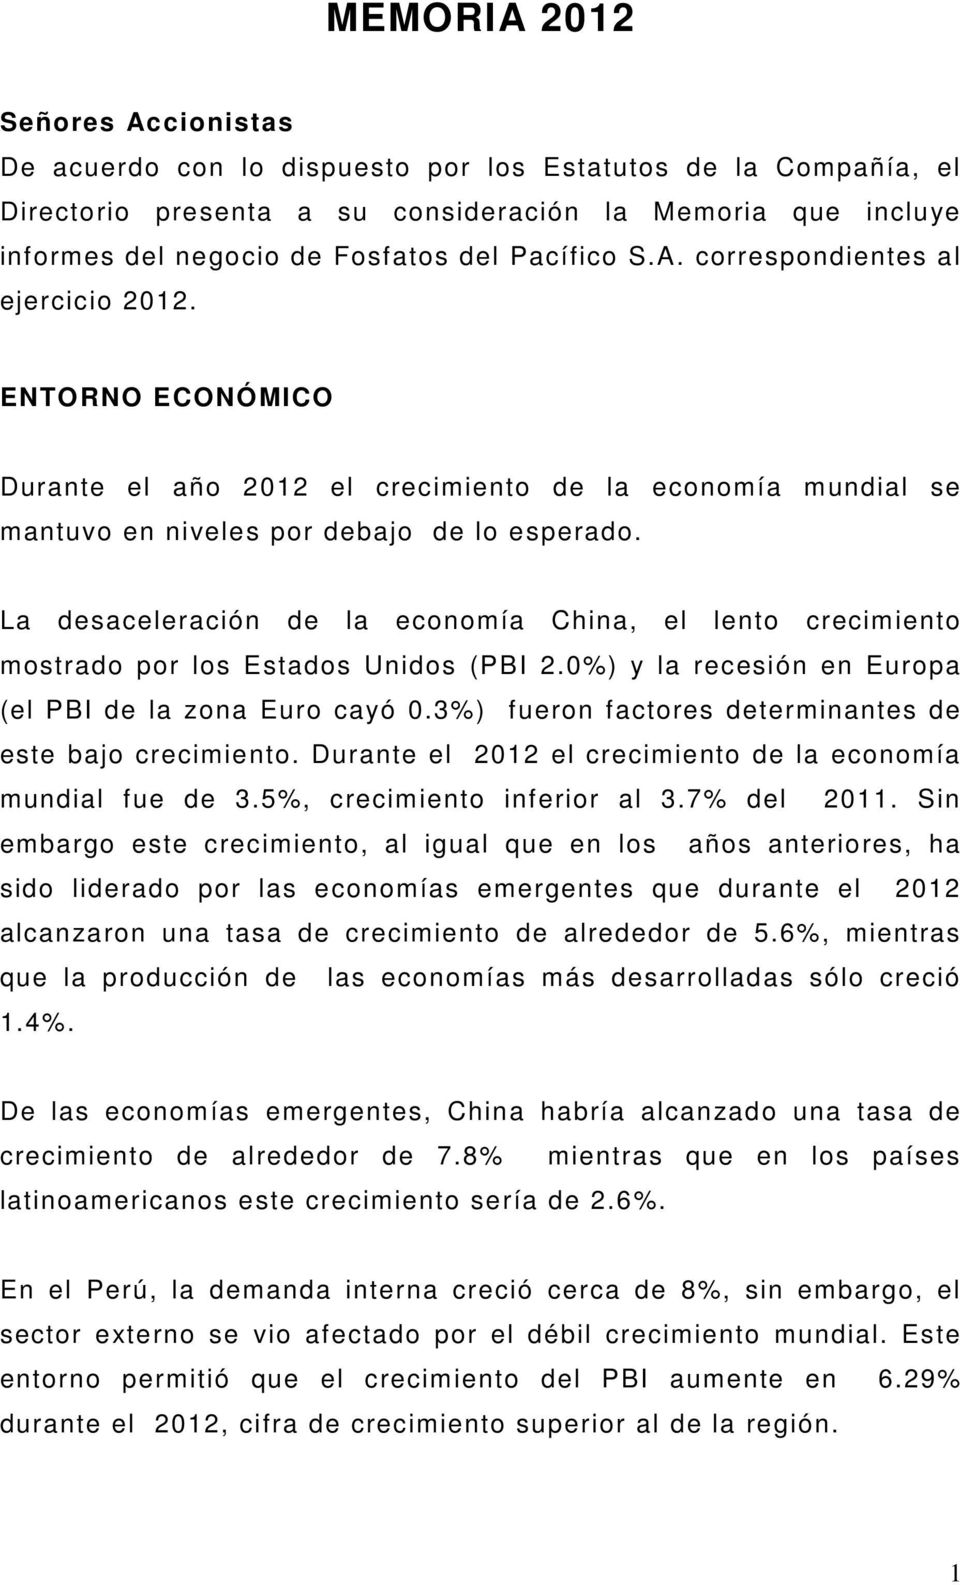 La desaceleración de la economía China, el lento crecimiento mostrado por los Estados Unidos (PBI 2.0%) y la recesión en Europa (el PBI de la zona Euro cayó 0.